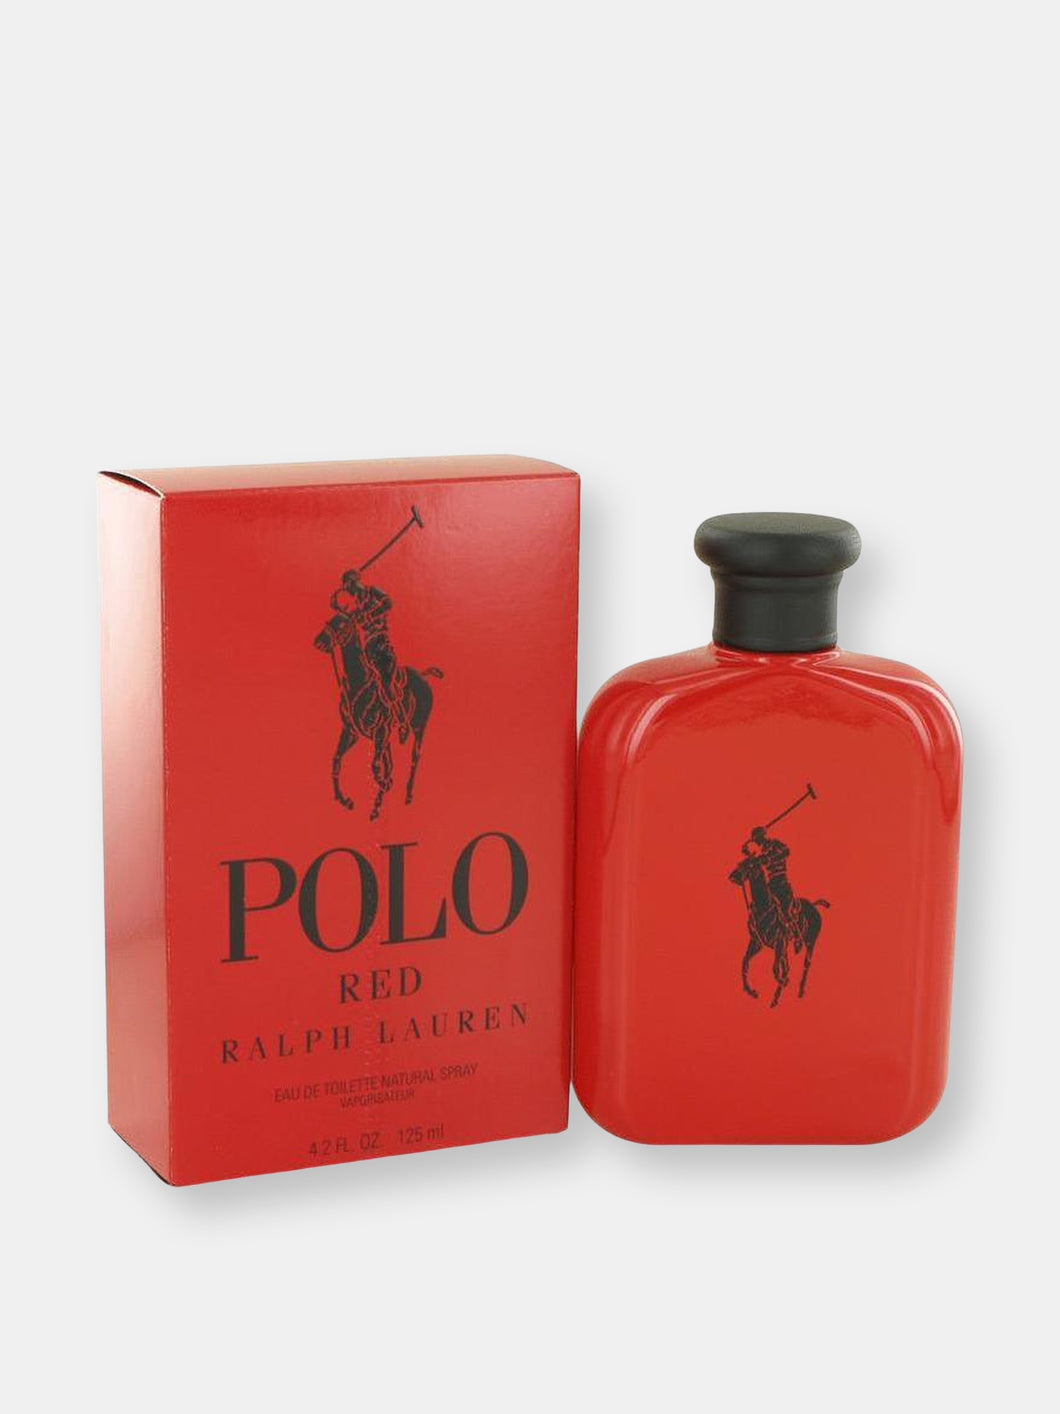 Polo Red by Ralph Lauren Eau De Toilette Spray 4.2 oz